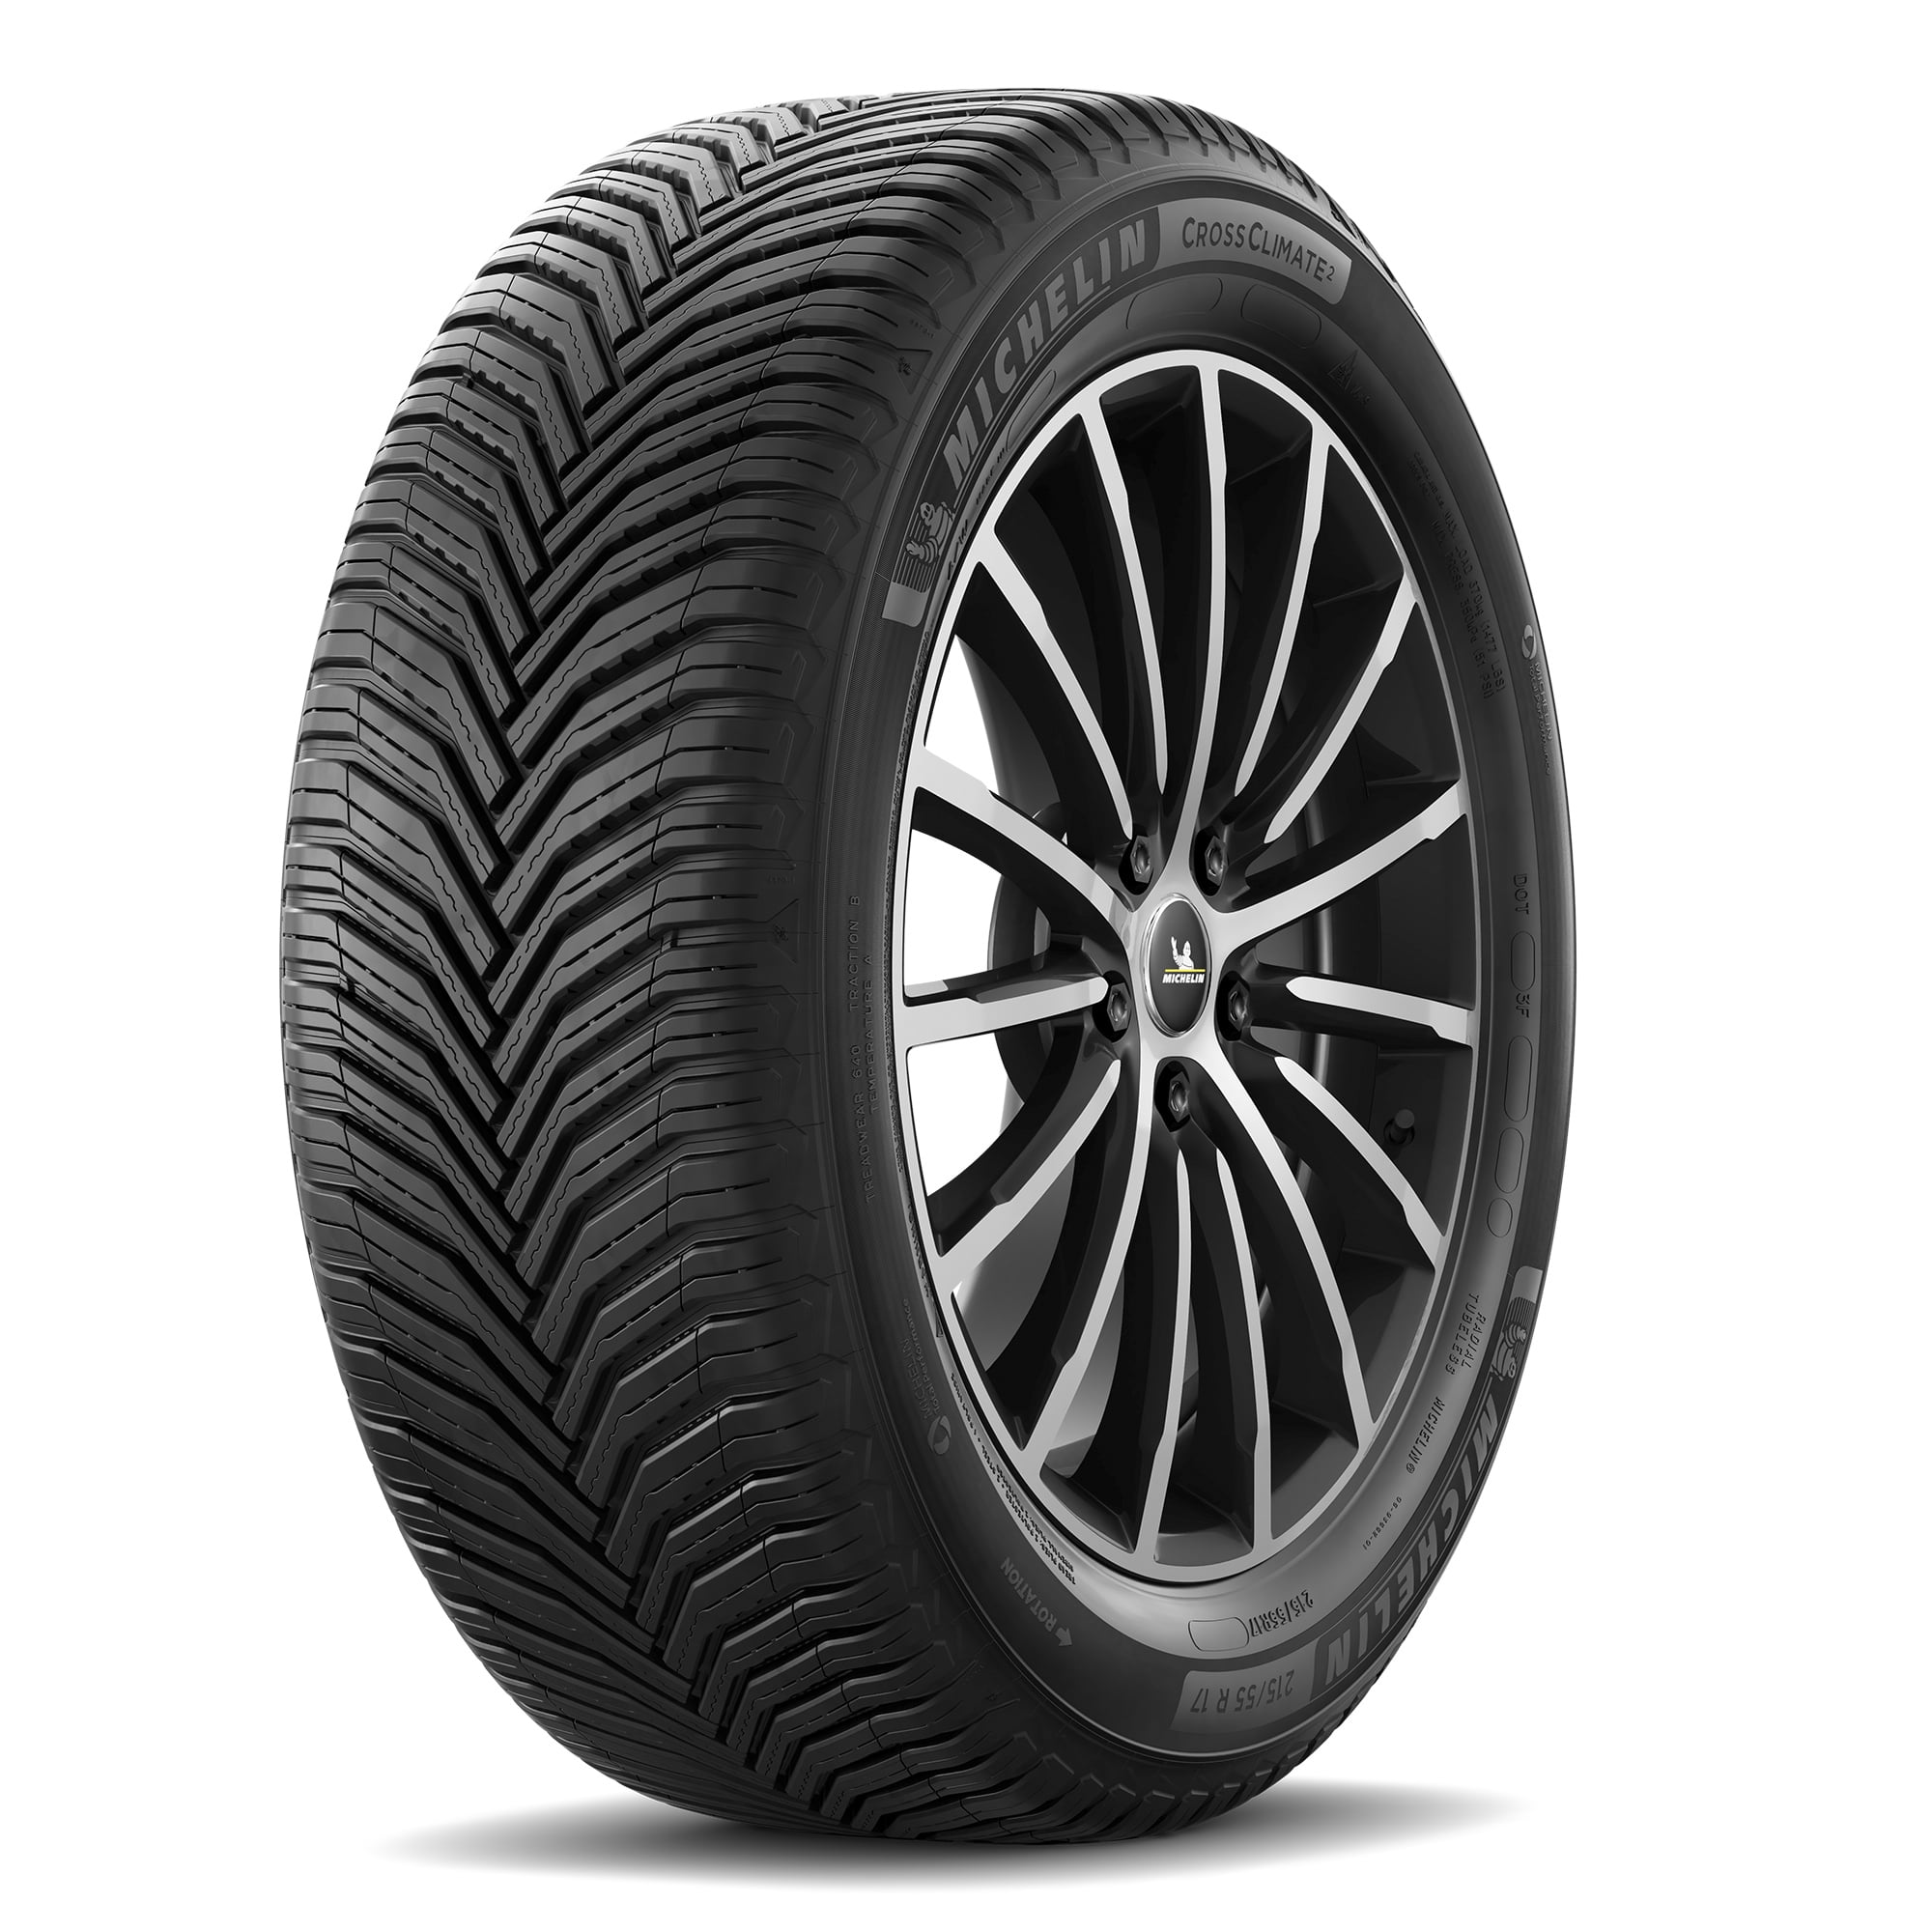 Michelin CrossClimate2 All-Season 235/65R18 106H Tire - Walmart.com